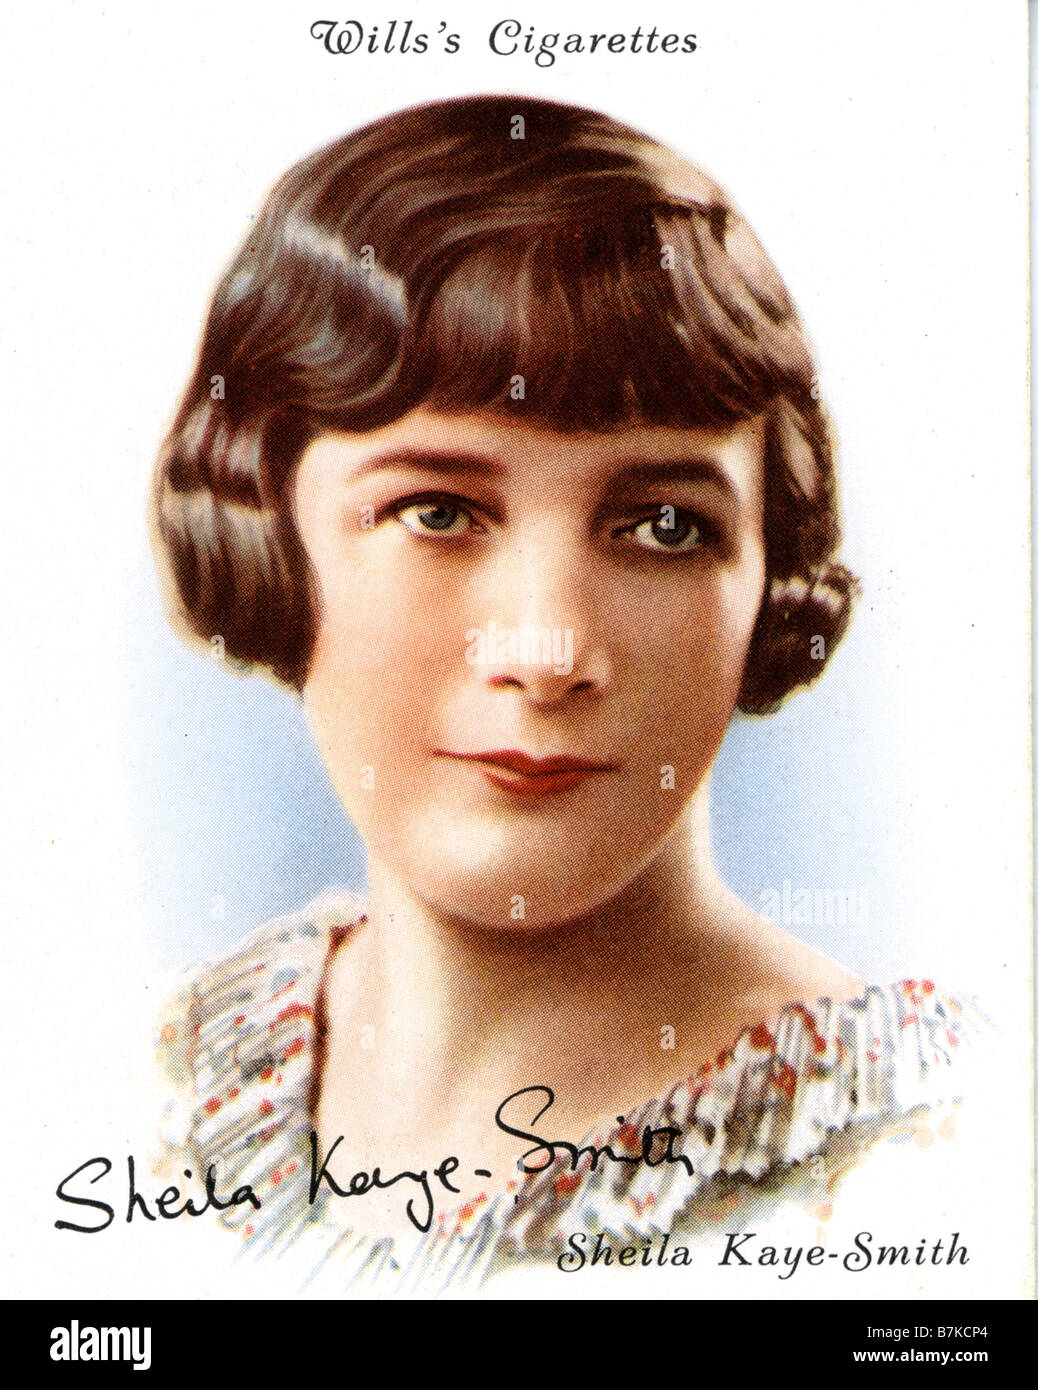 SHEILA KAYE-SMITH escritor y novelista inglesa en 1930 Tarjeta de cigarrillos Foto de stock